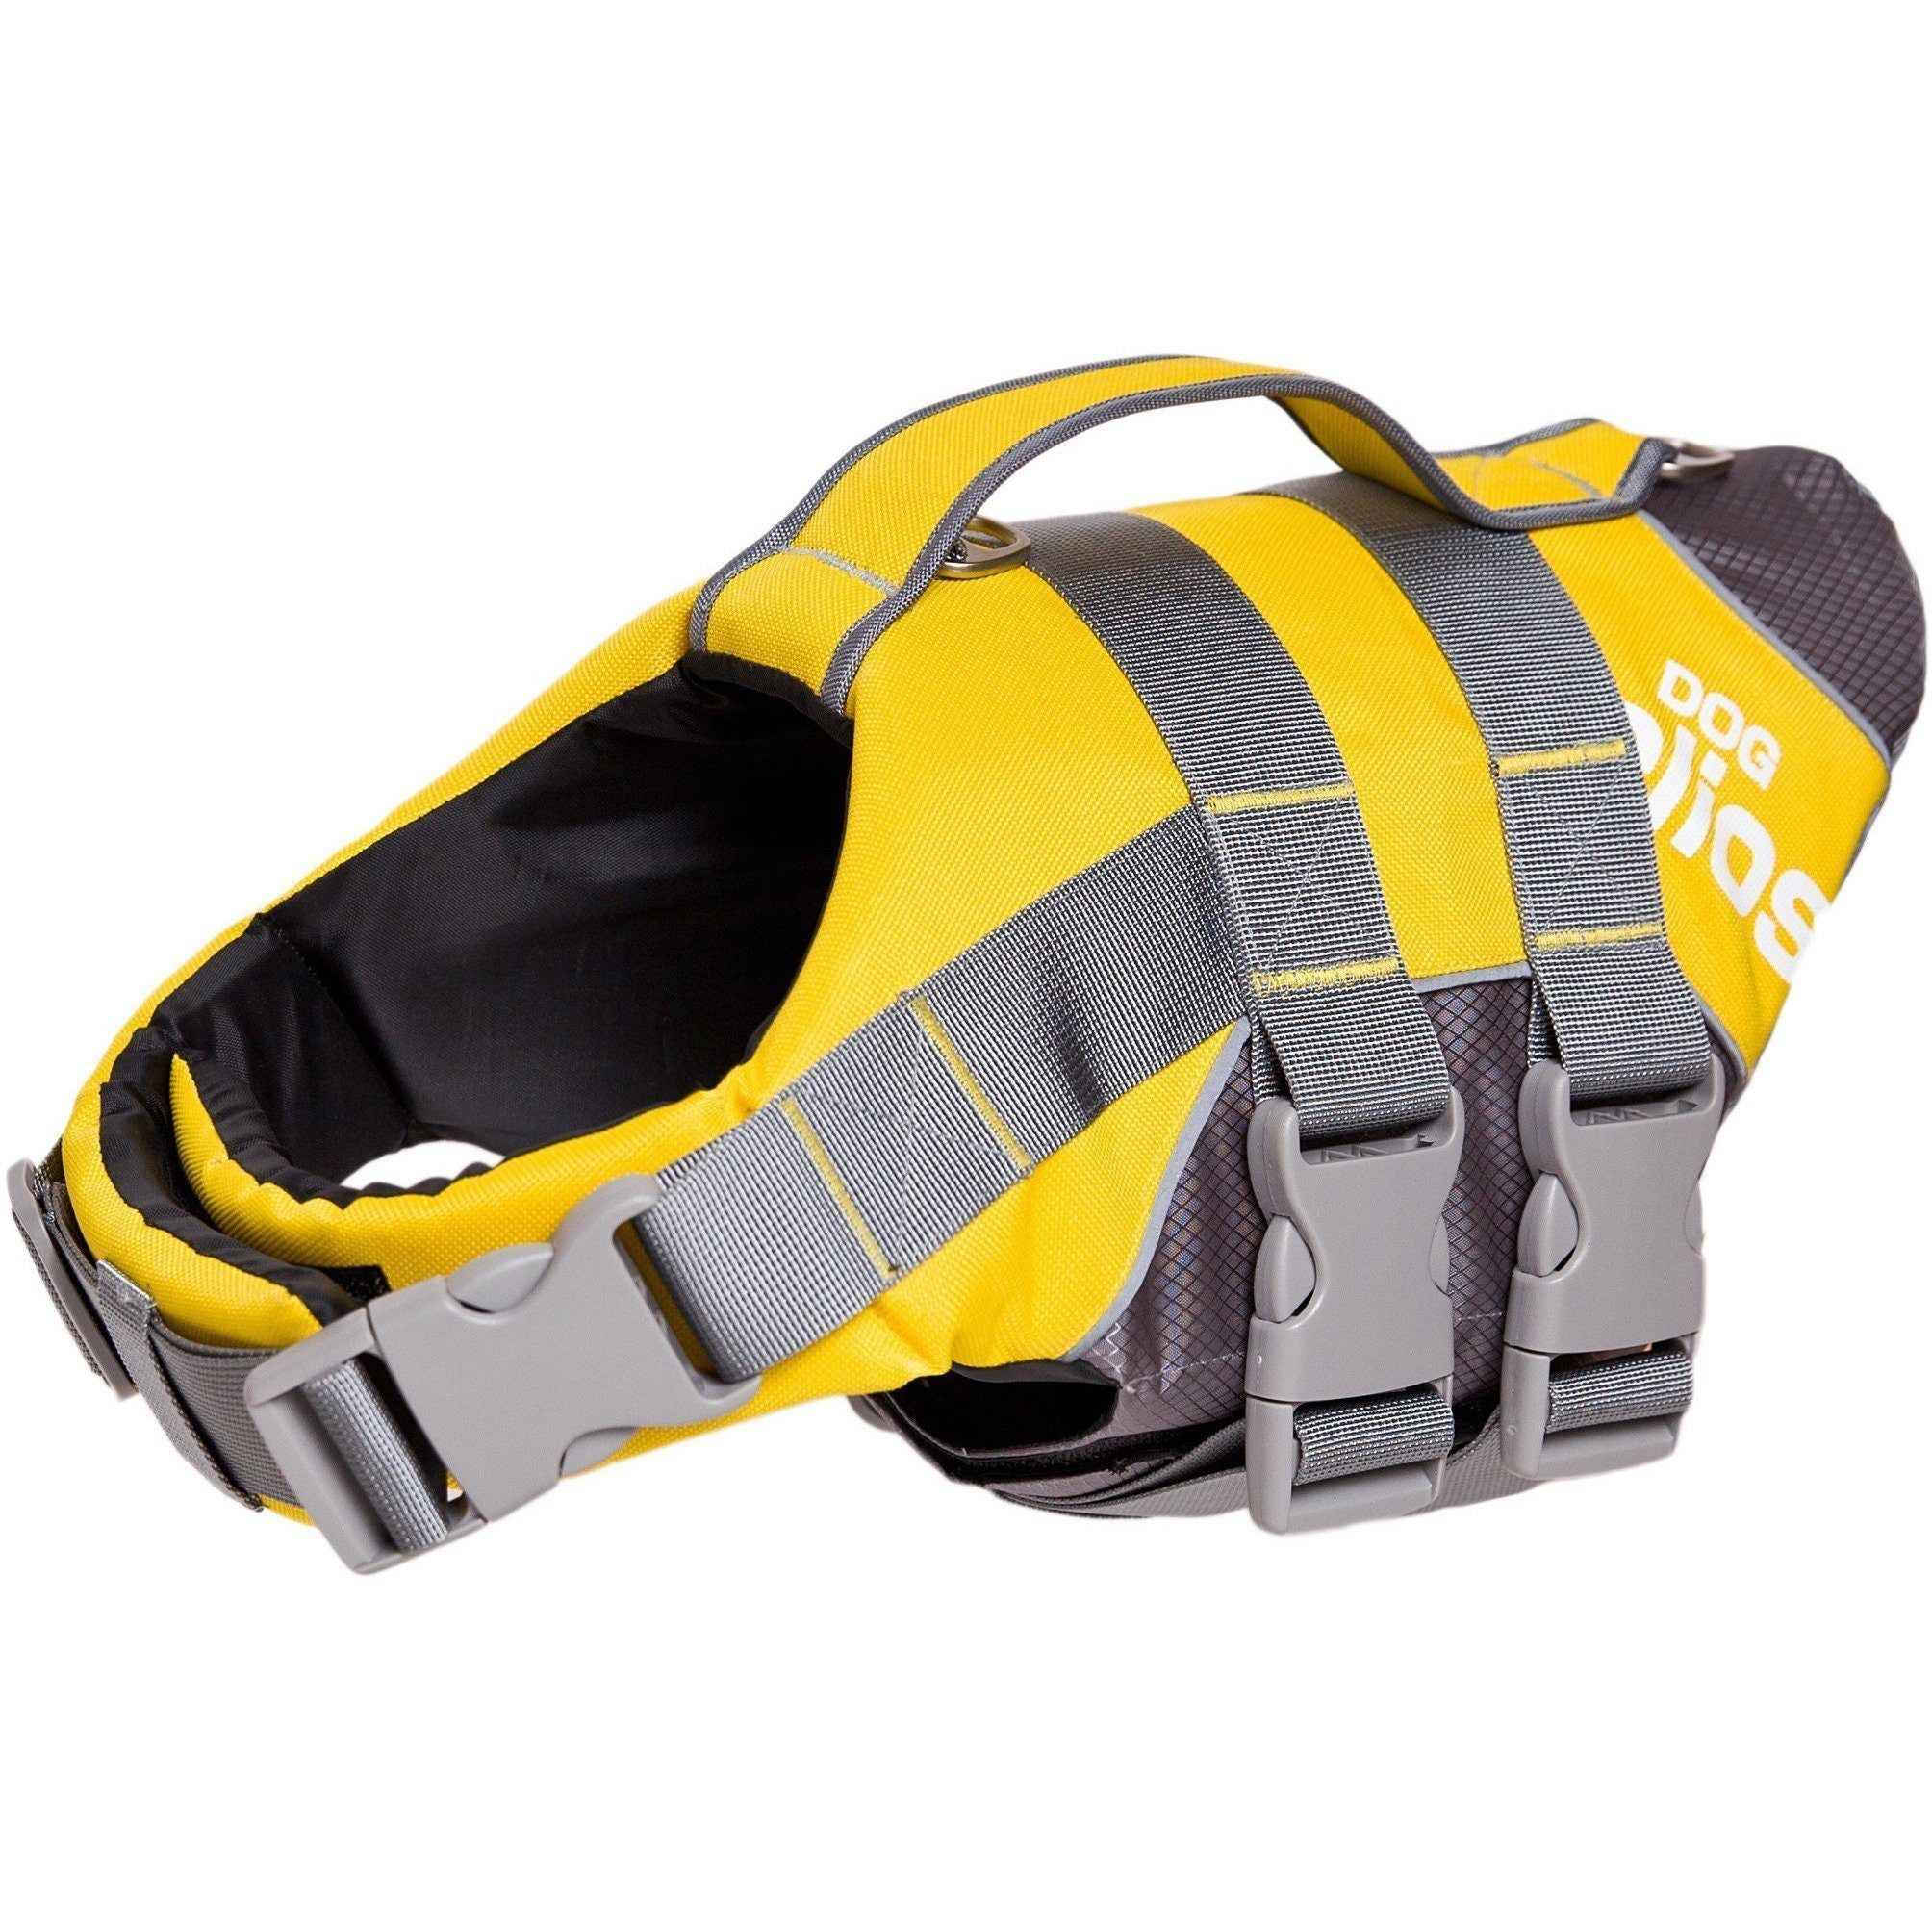 Dog Helios ® 'Splash-Explore' Reflective and Adjustable Floating Safety Dog Life Jacket Small Yellow